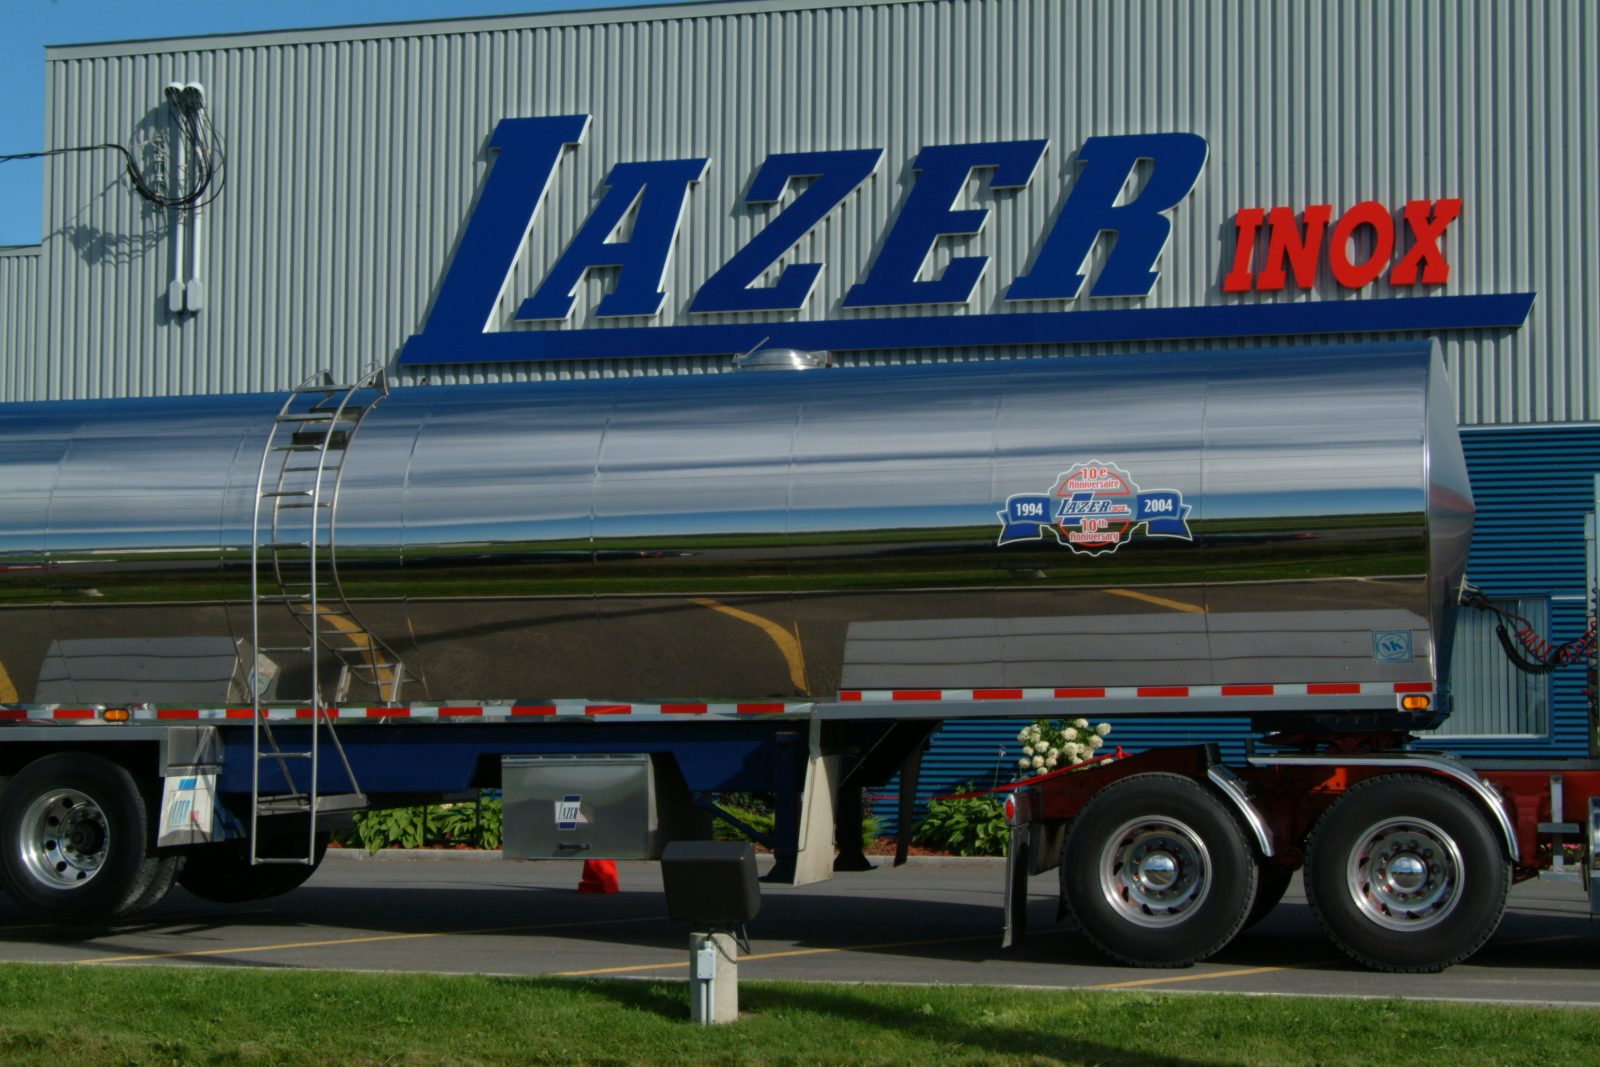 Lazer Inox met à pied une centaine d’employés et se protège contre ses créanciers